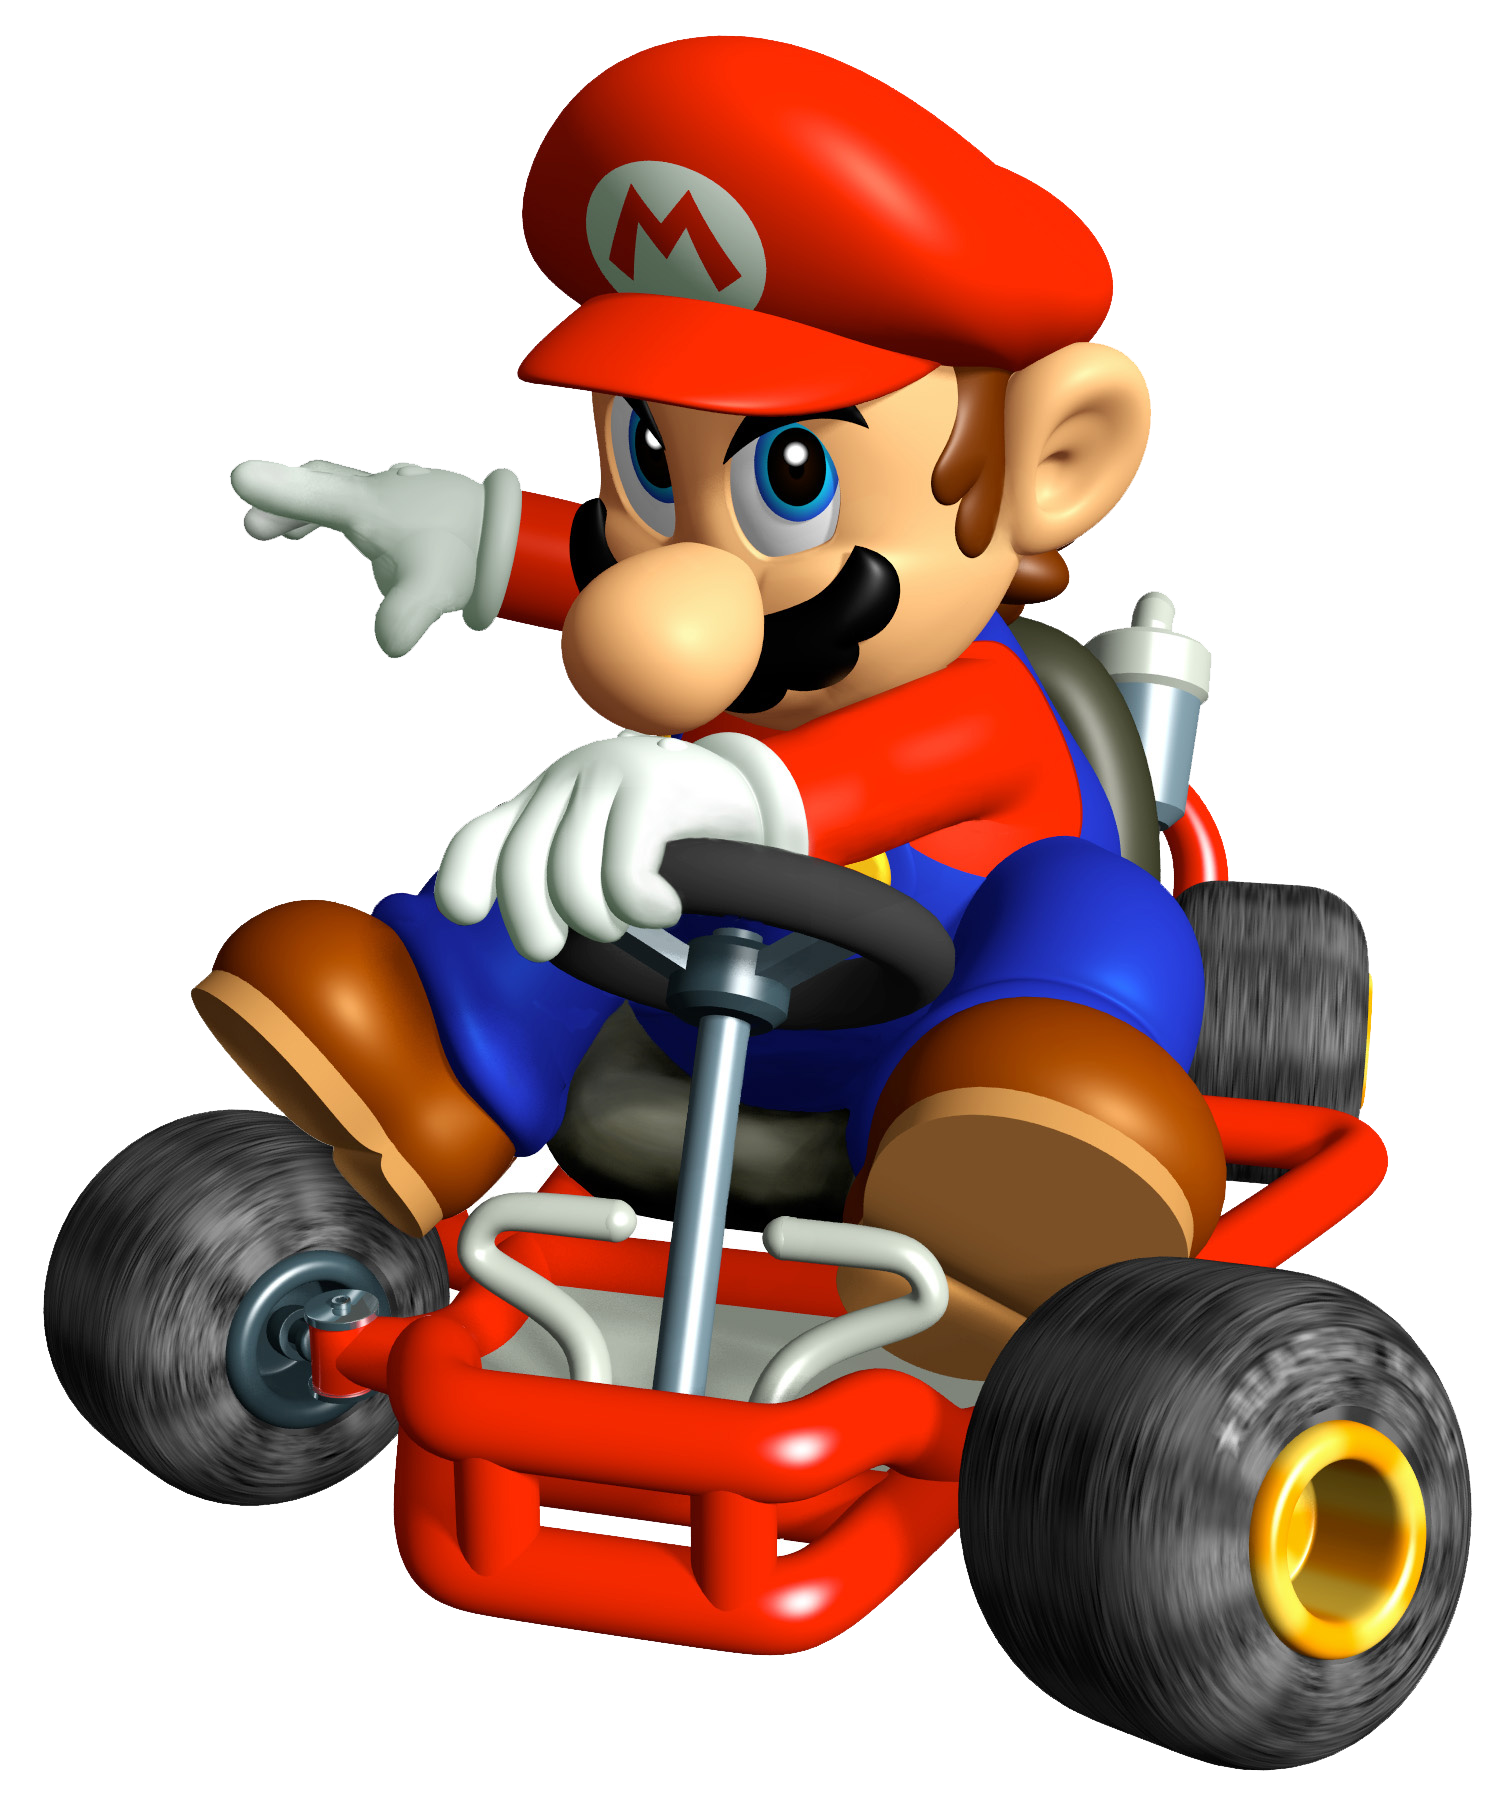 Super Mario Kart Free Download PNG Image